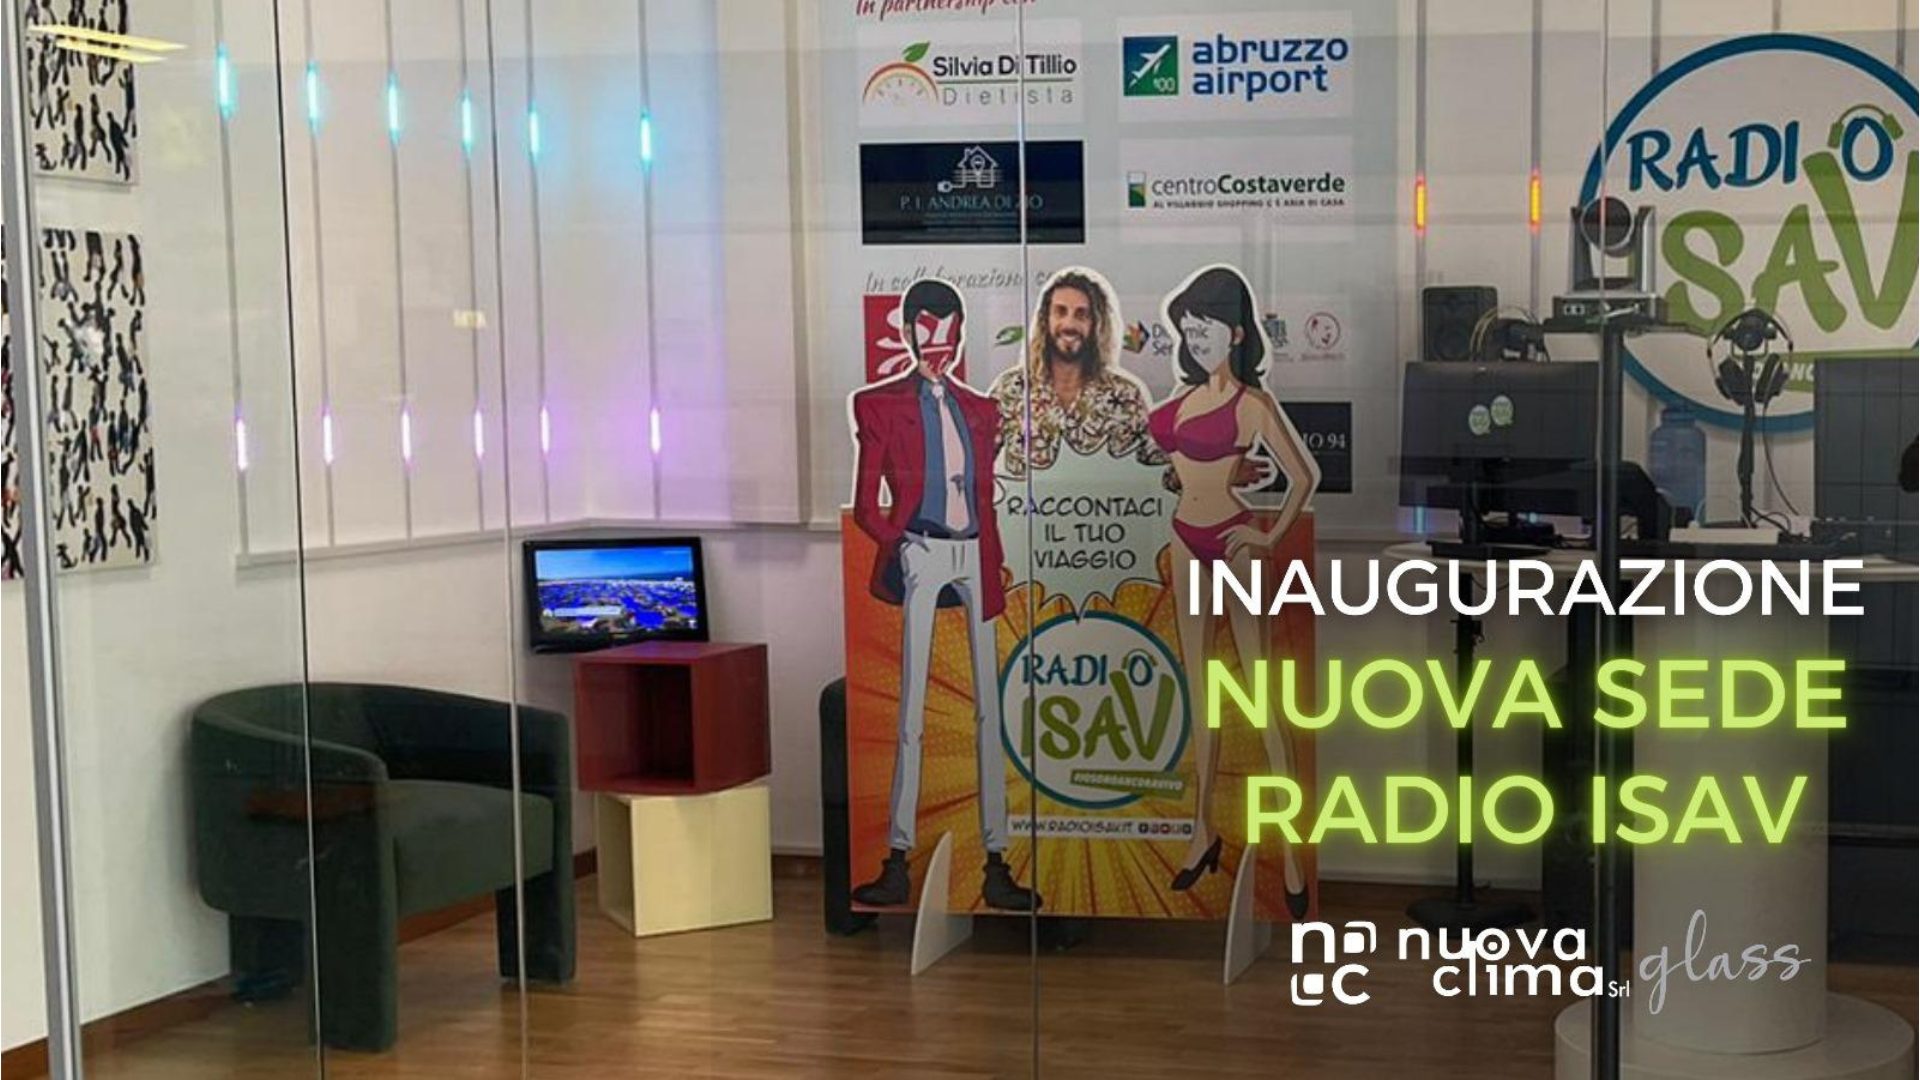 Radio ISAV inaugura in Aeroporto il Nuova Clima Glass la seconda postazione radio dell'emittente pescarese.